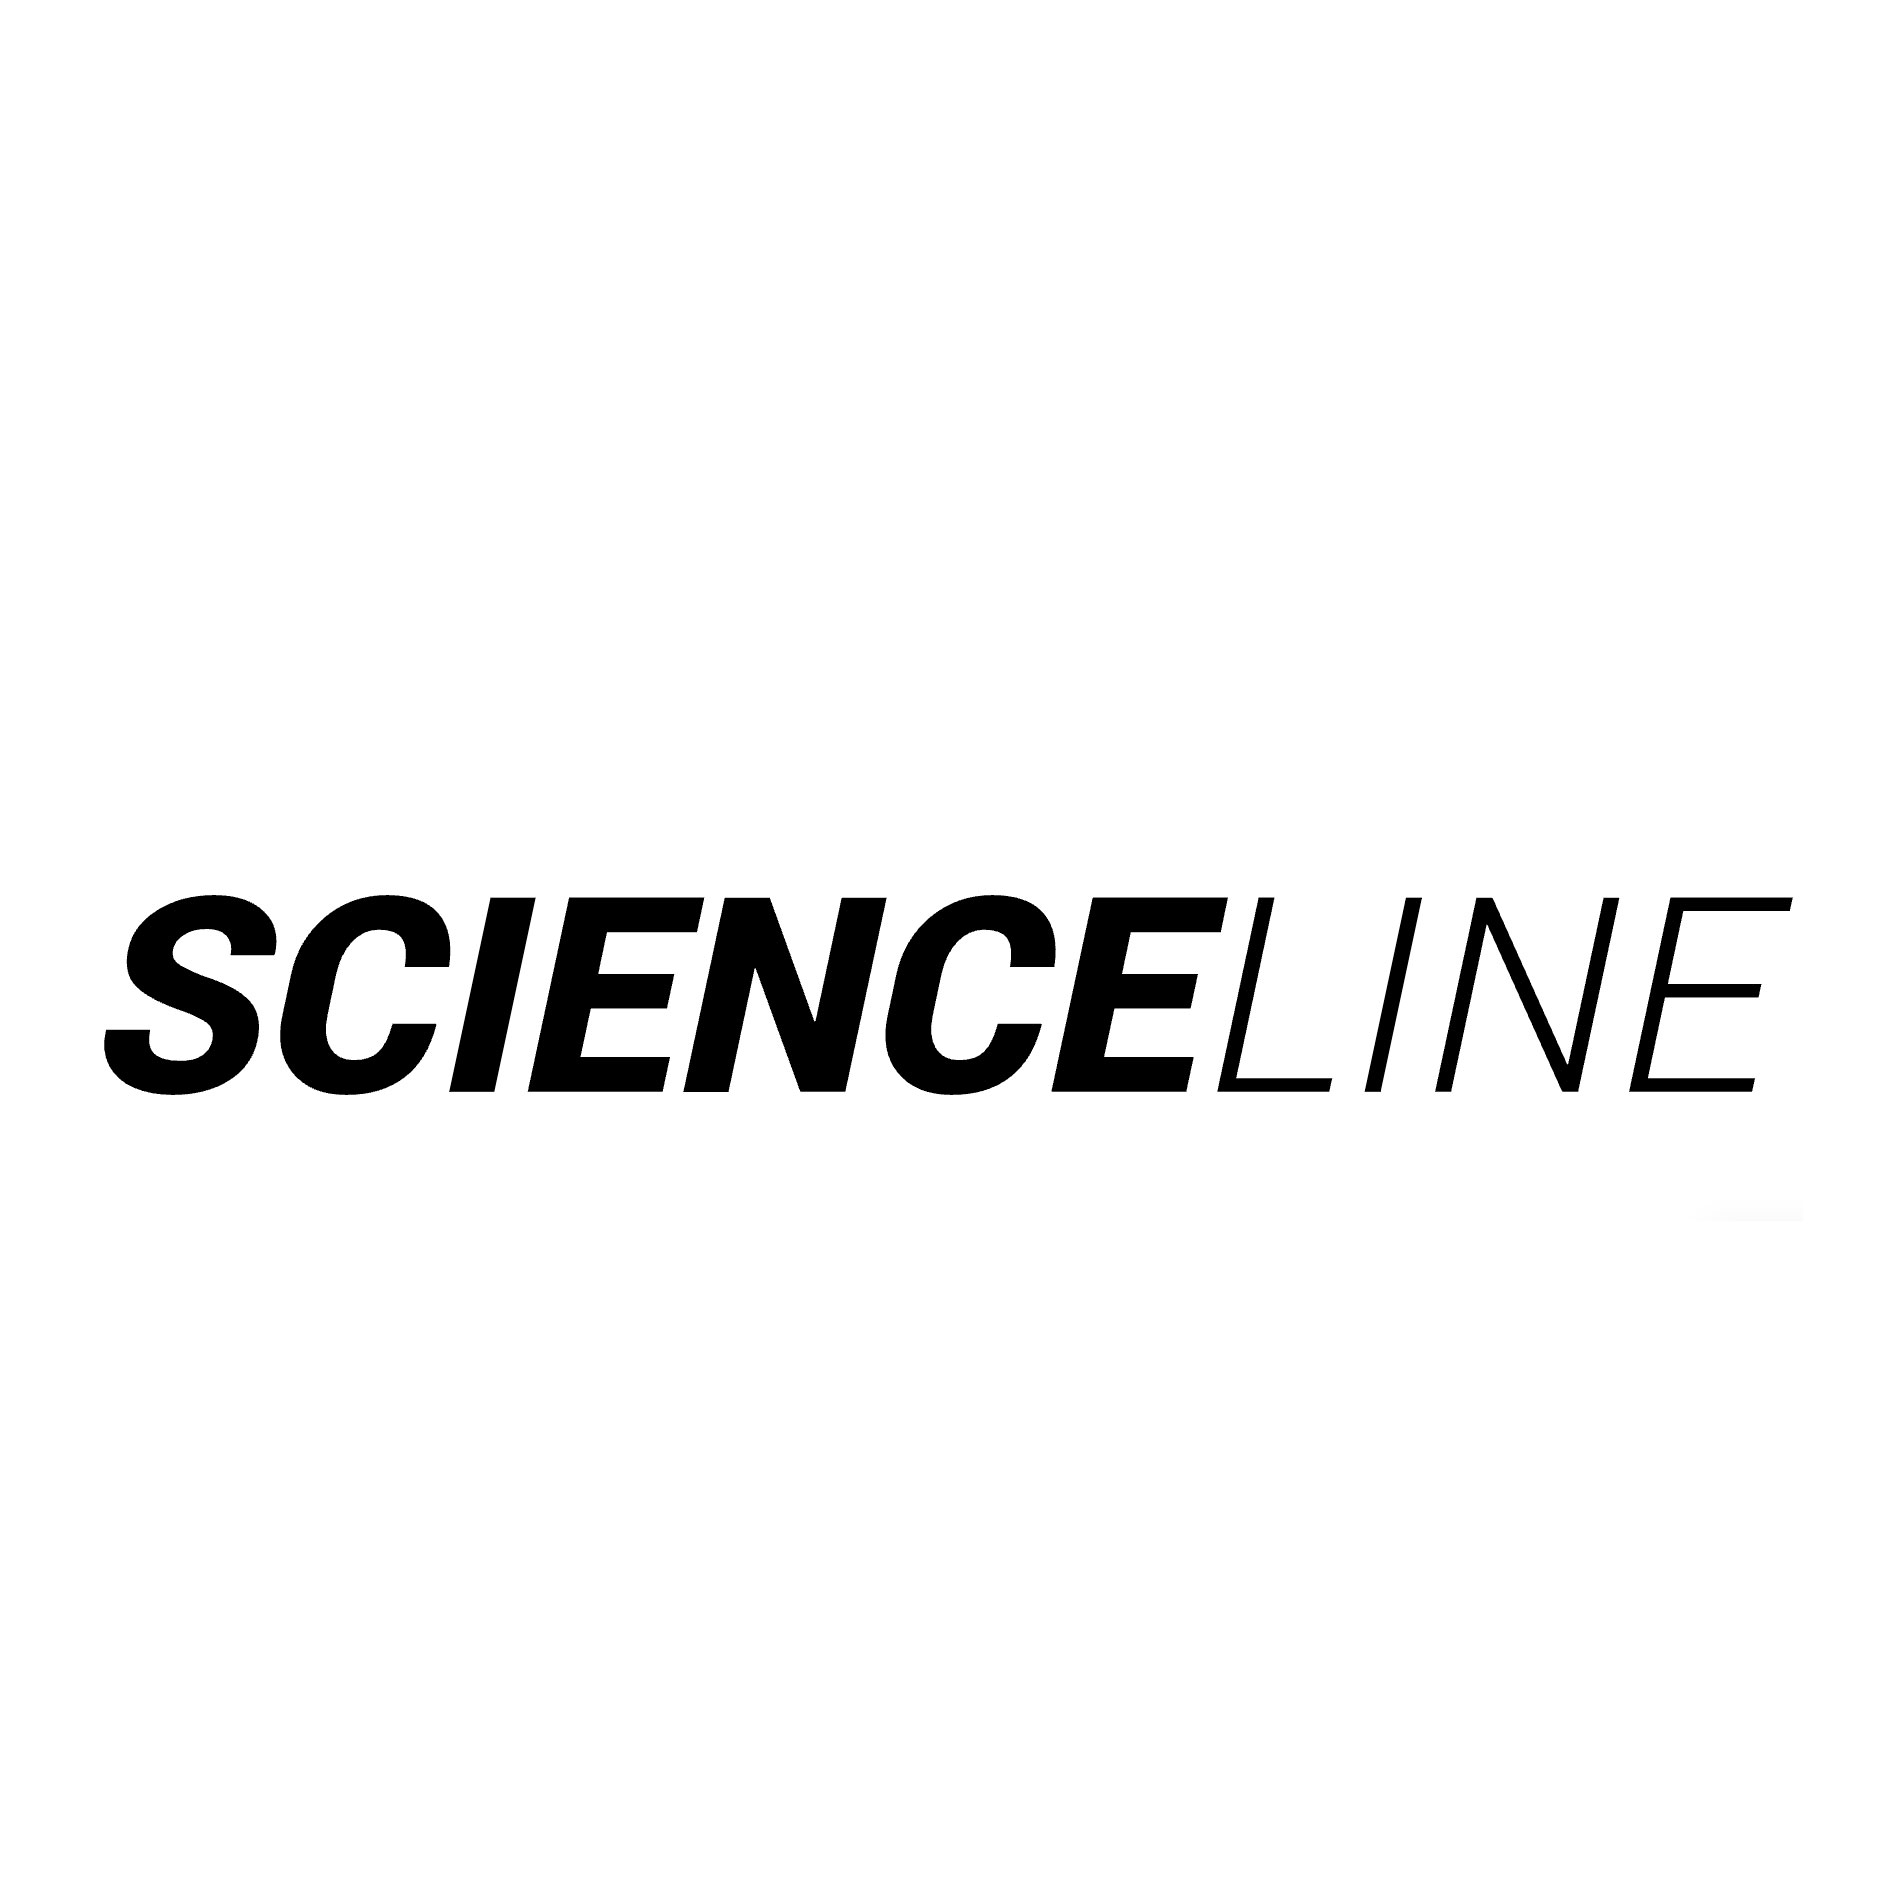 Scienceline logo